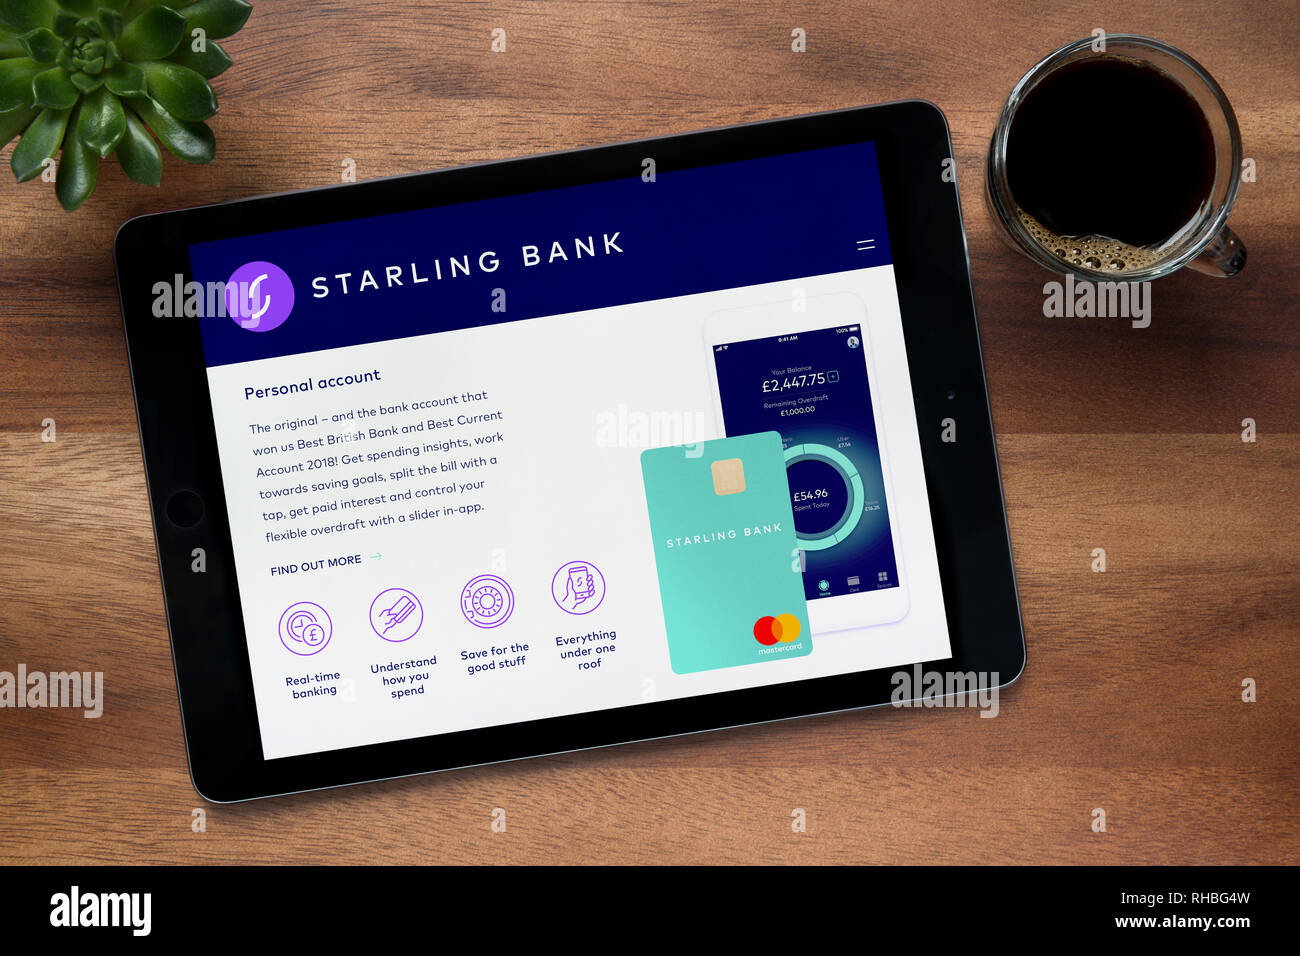 Le site web de banque Starling est vu sur un iPad tablet, sur une table en bois avec une machine à expresso et d'une plante (usage éditorial uniquement). Banque D'Images